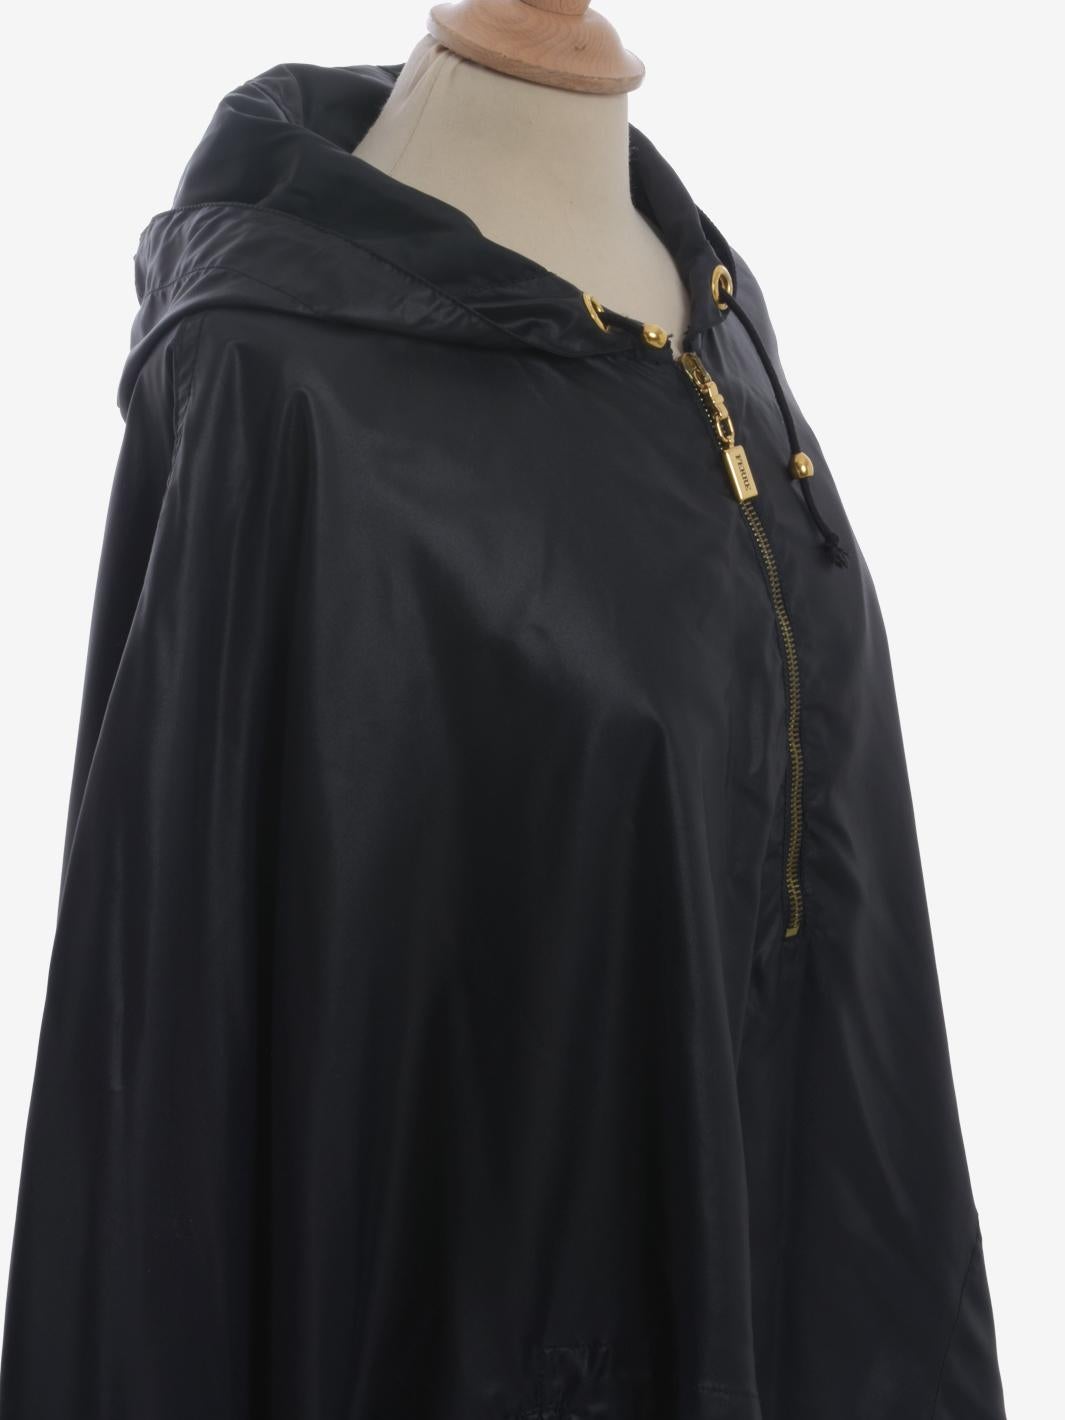 Gianfranco Ferré Raincoat - 80s For Sale 1